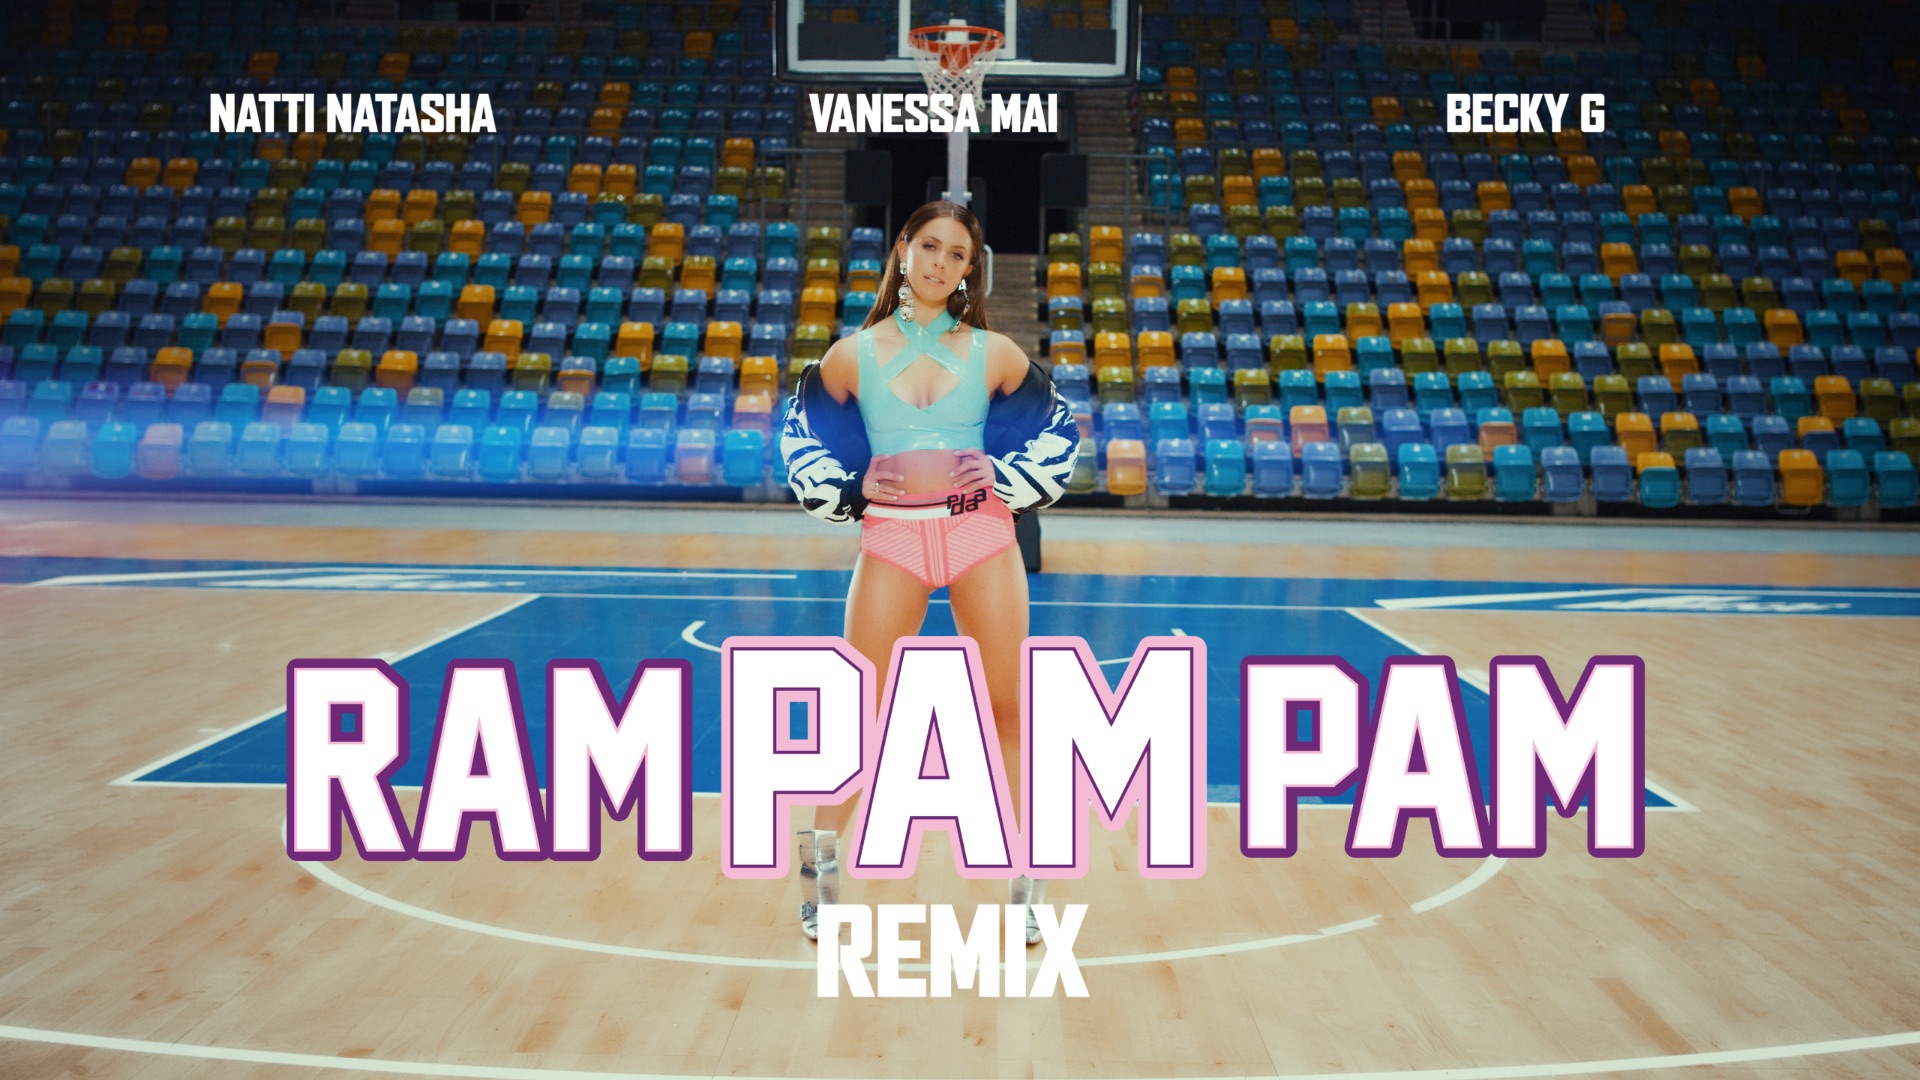 Ram Pam Pam (Germany Remix) - Music Video by NATTI NATASHA, Becky G &  Vanessa Mai - Apple Music